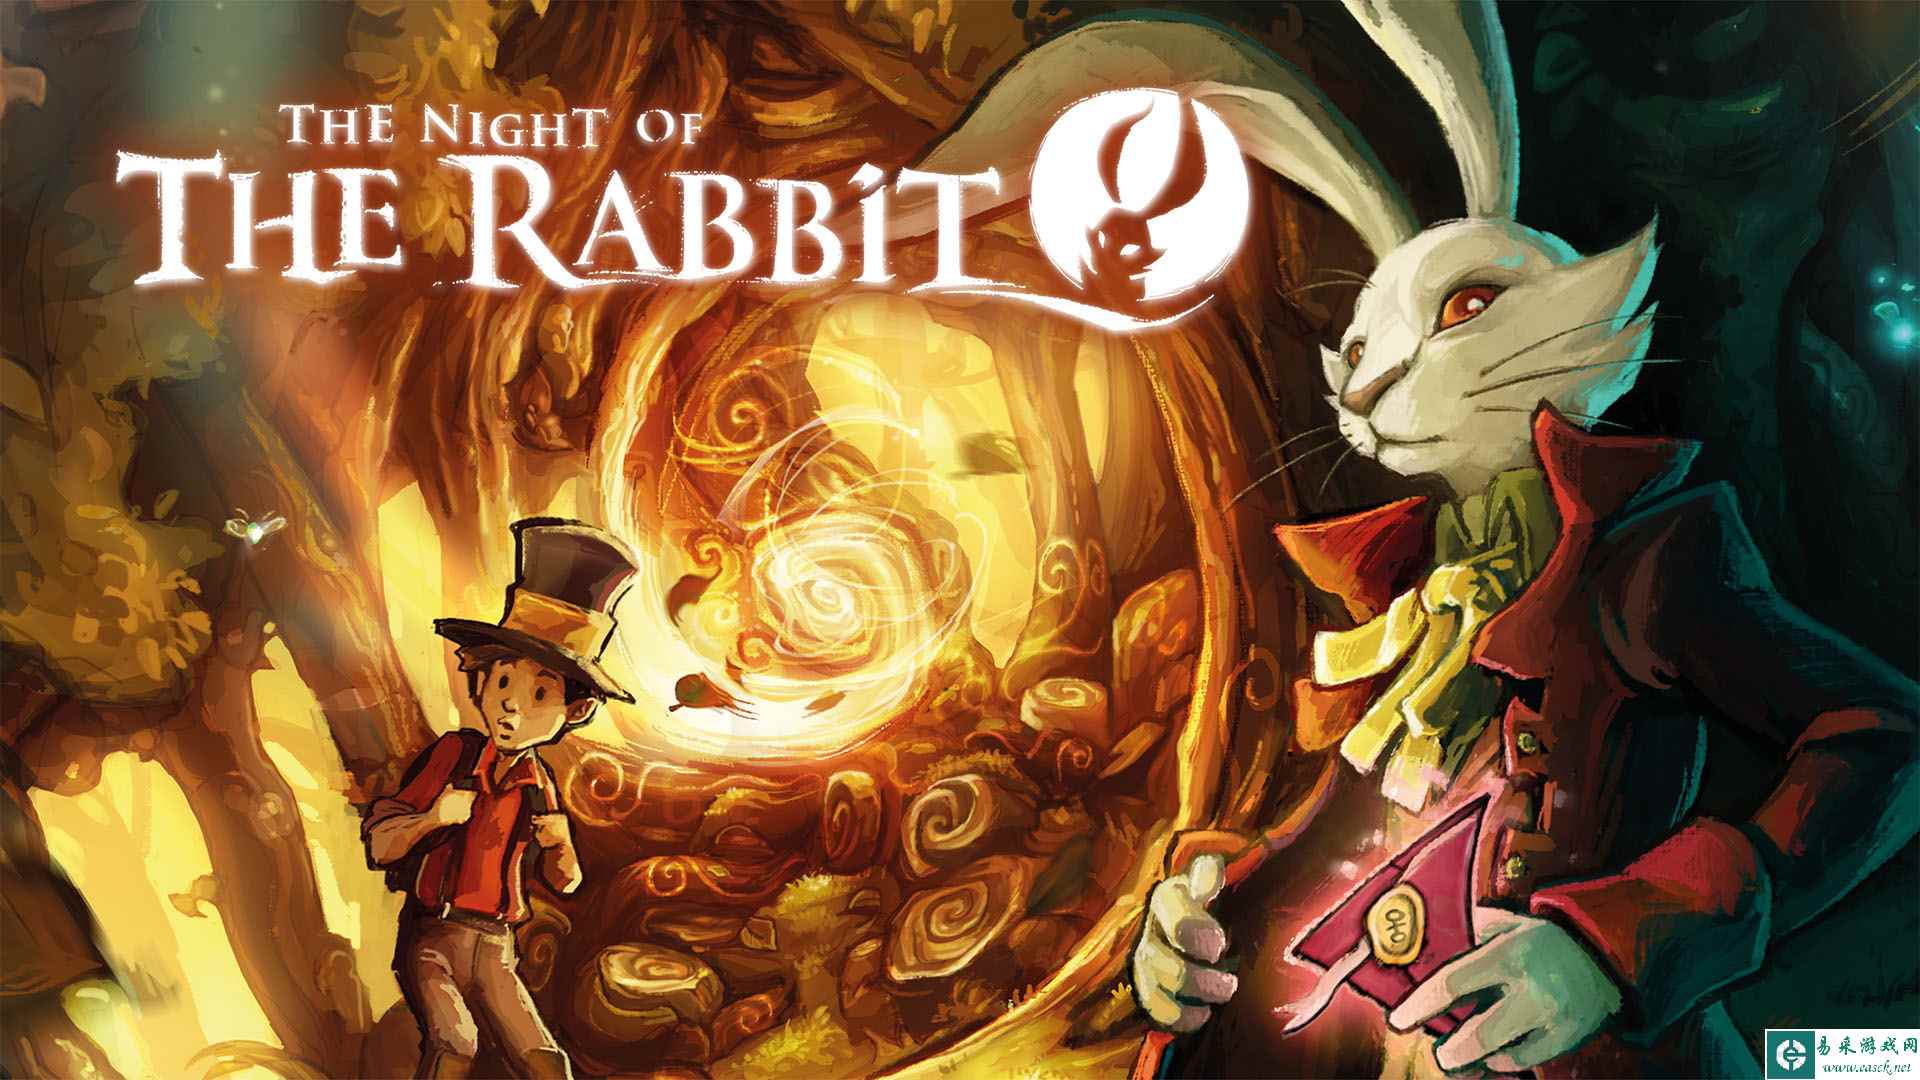 2013年首次发布的备受赞誉的经典2D冒险佳作《兔子之夜》将登陆Switch平台